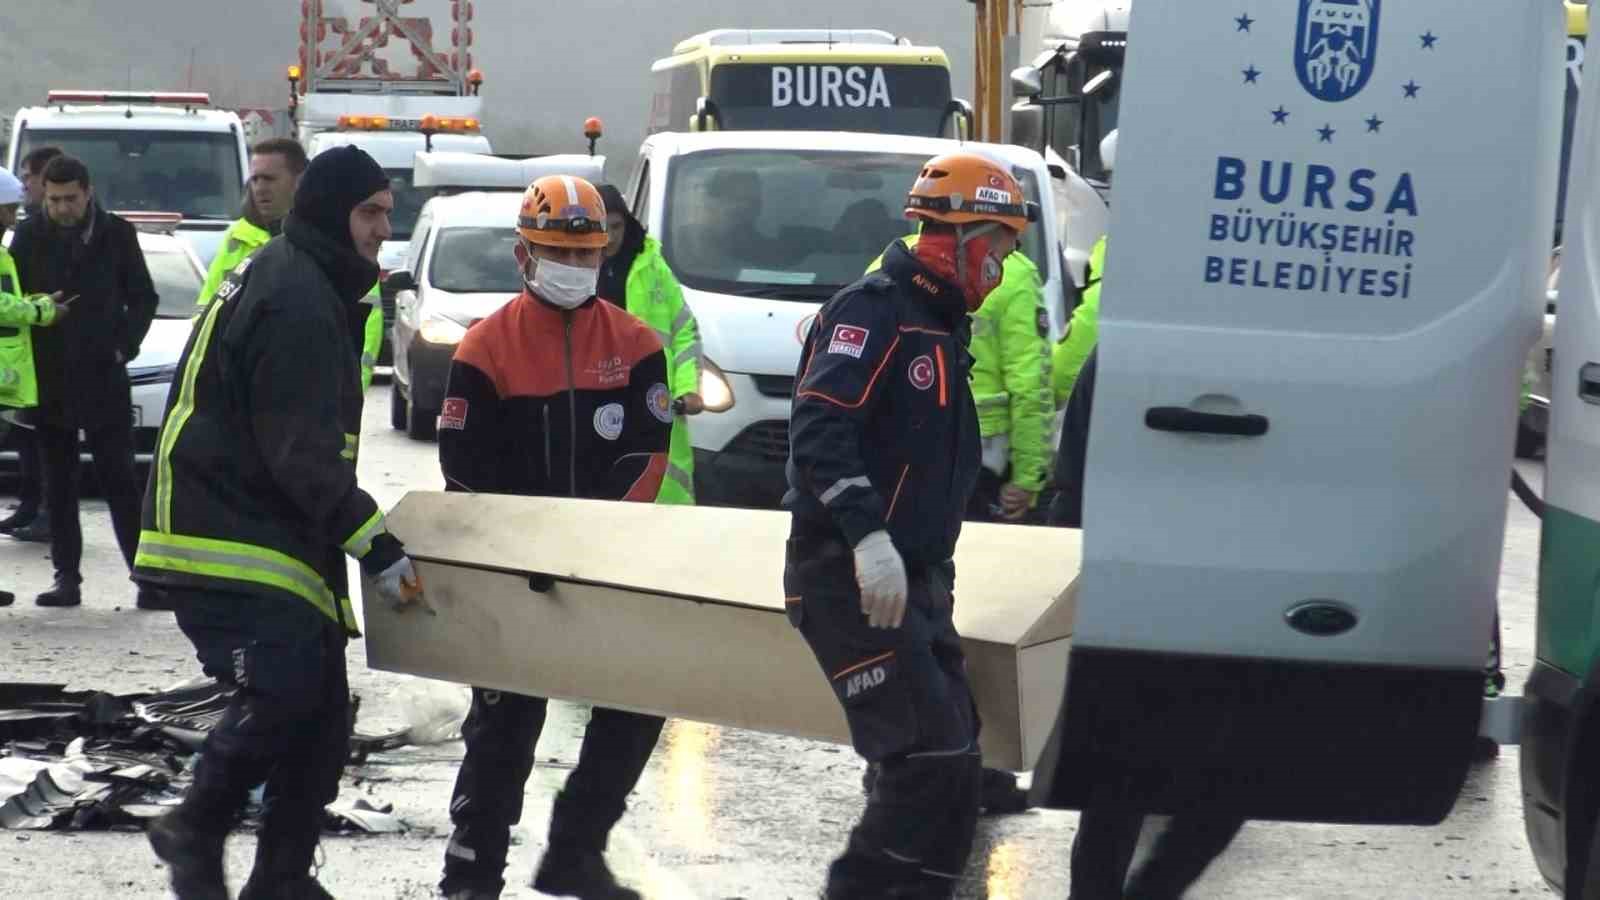 Bursa’da katliam gibi kazada ölen 4 kişinin kimlikleri belli oldu